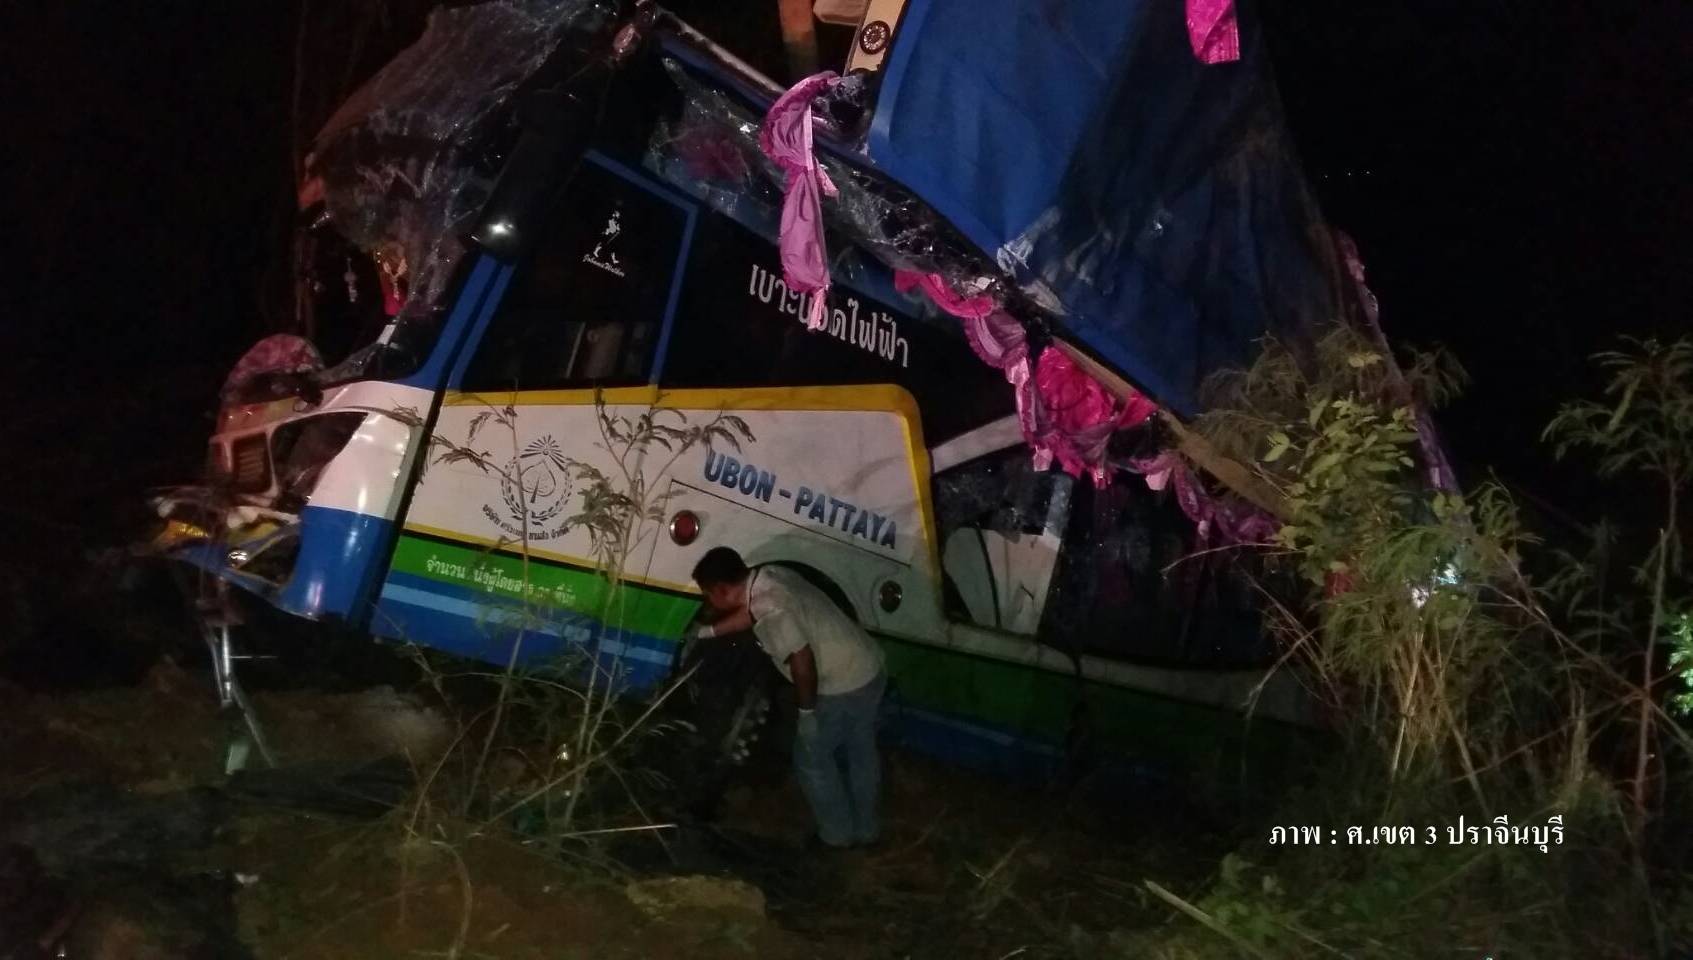 เกิดเหตุรถทัวร์ รถตู้ รถกระบะชนกัน บนถนนสาย 304 จ.ปราจีนบุรี  เสียชีวิต 1 เจ็บ 30 